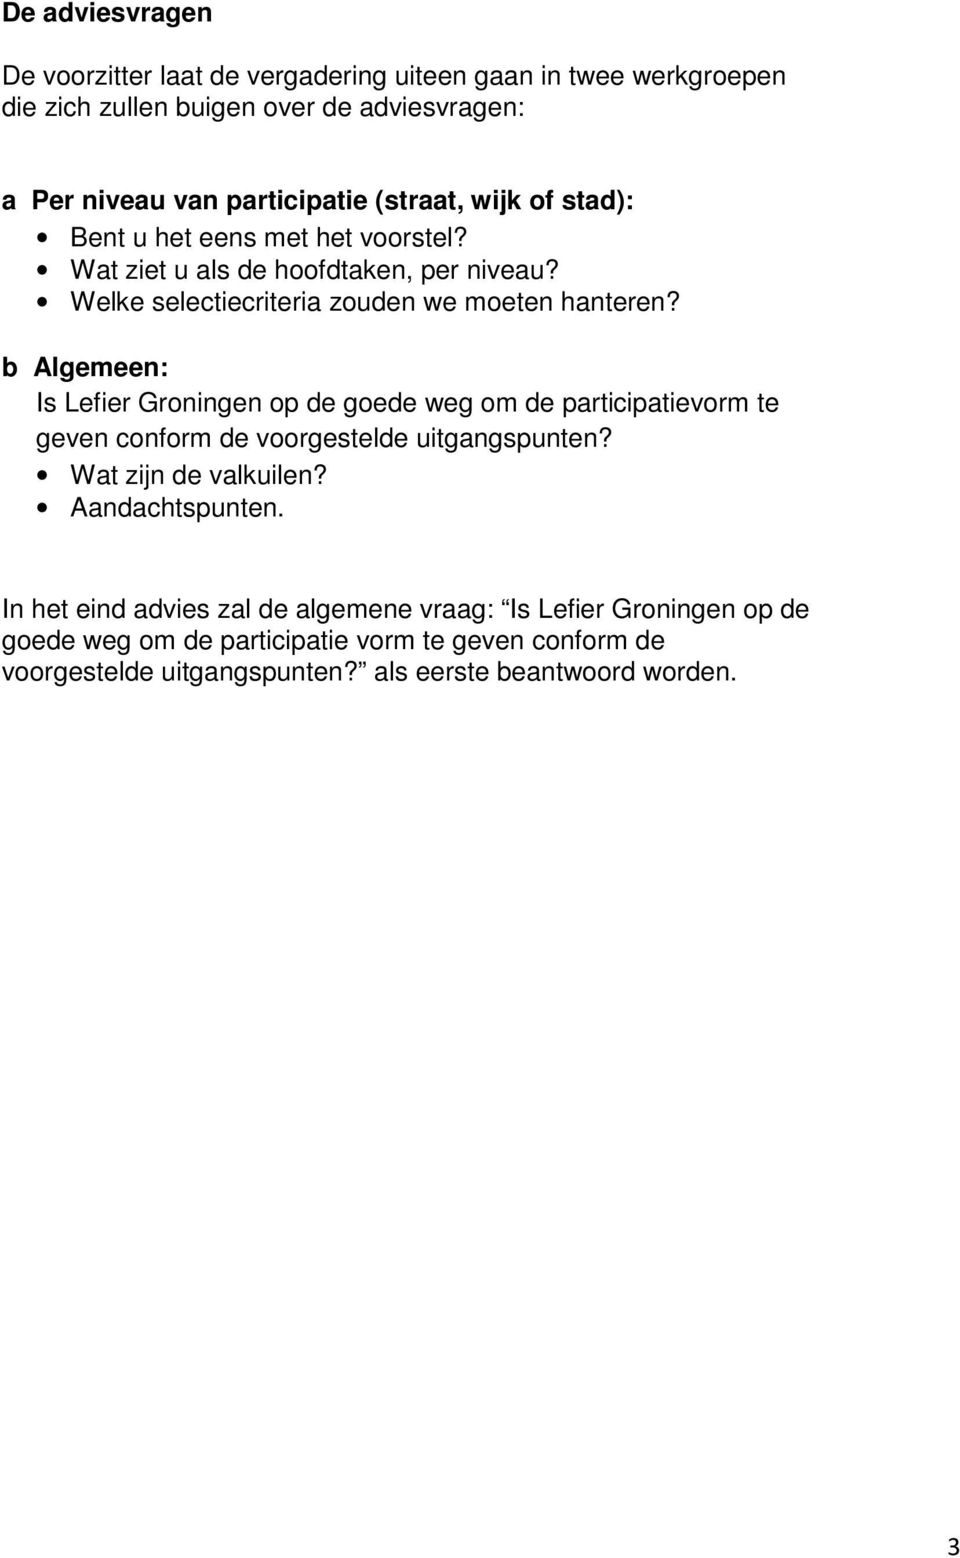 b Algemeen: Is Lefier Groningen op de goede weg om de participatievorm te geven conform de voorgestelde uitgangspunten? Wat zijn de valkuilen? Aandachtspunten.